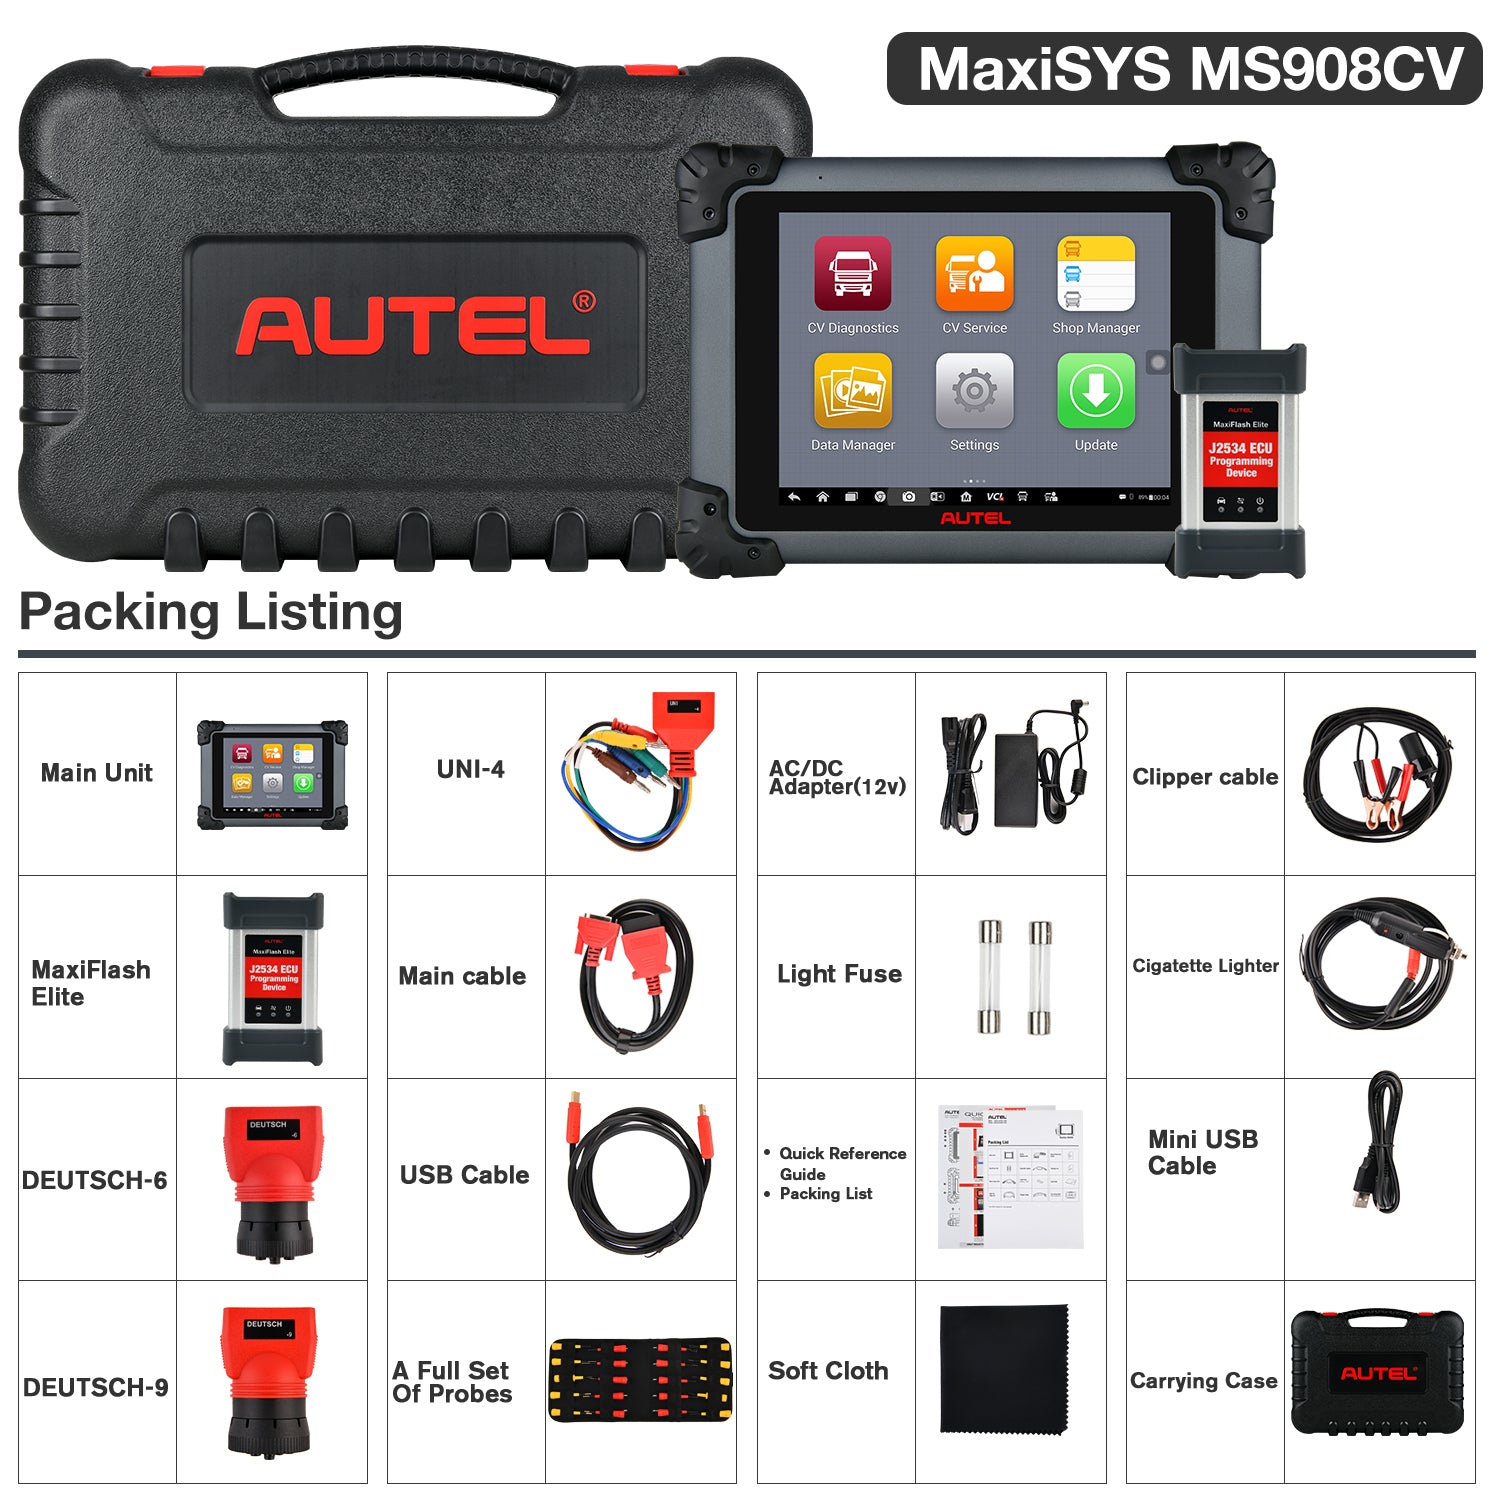 Autel MS908CV Package List